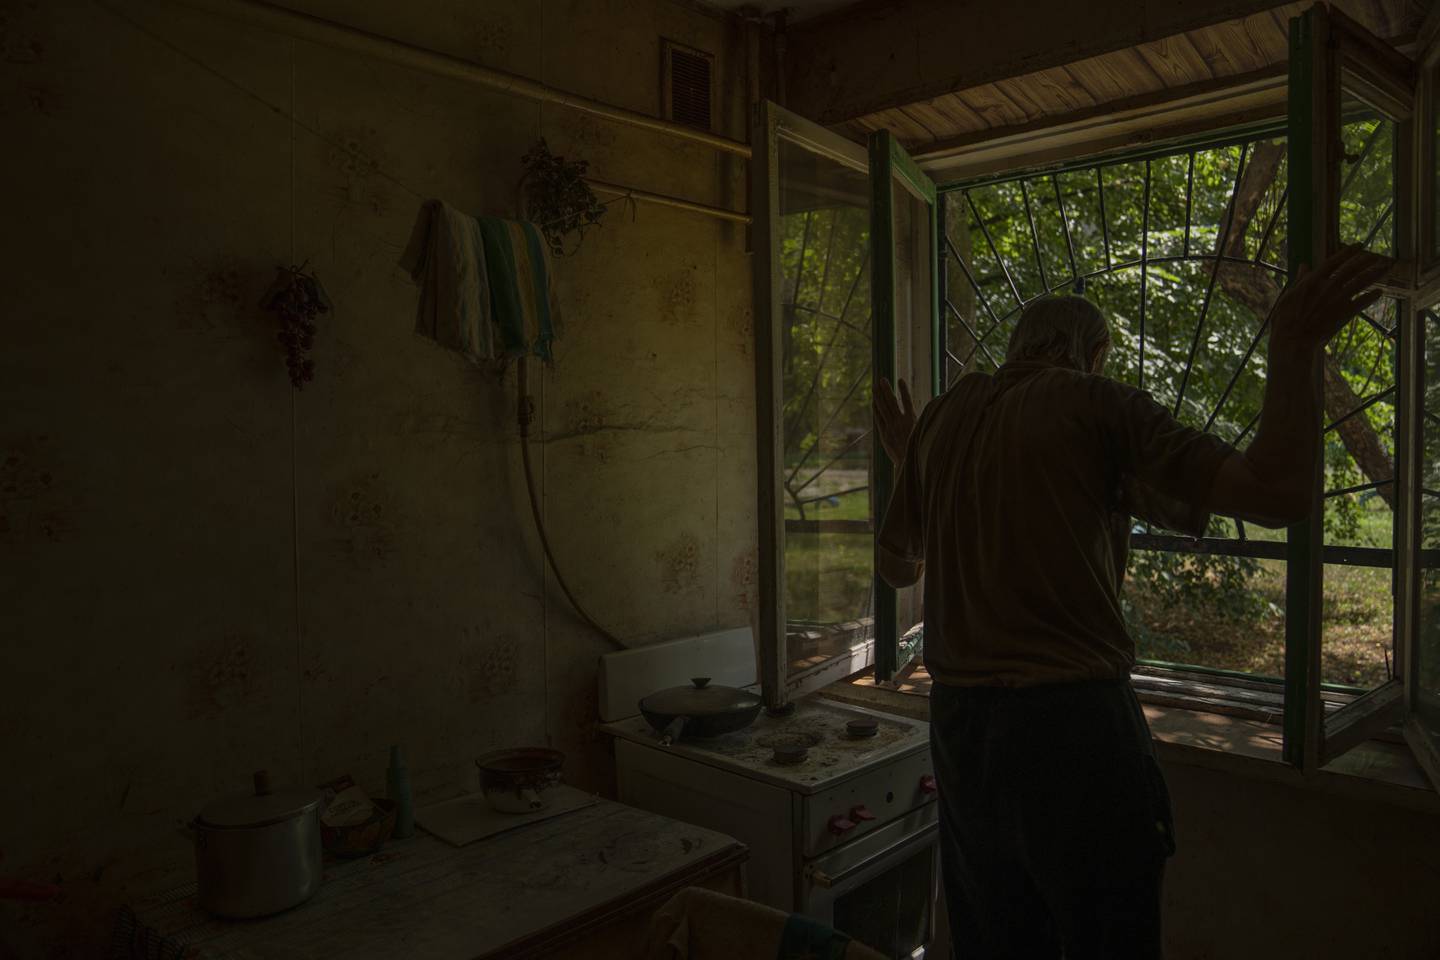 Valerij Iltsjenko bor alene og sier han føler seg ensom når den ene naboen etter den andre legger på flukt. Men han forstår at de gjør det. Det er bedre enn å bli bombet, sier han. Foto: Nariman El-Mofty / AP / NTB